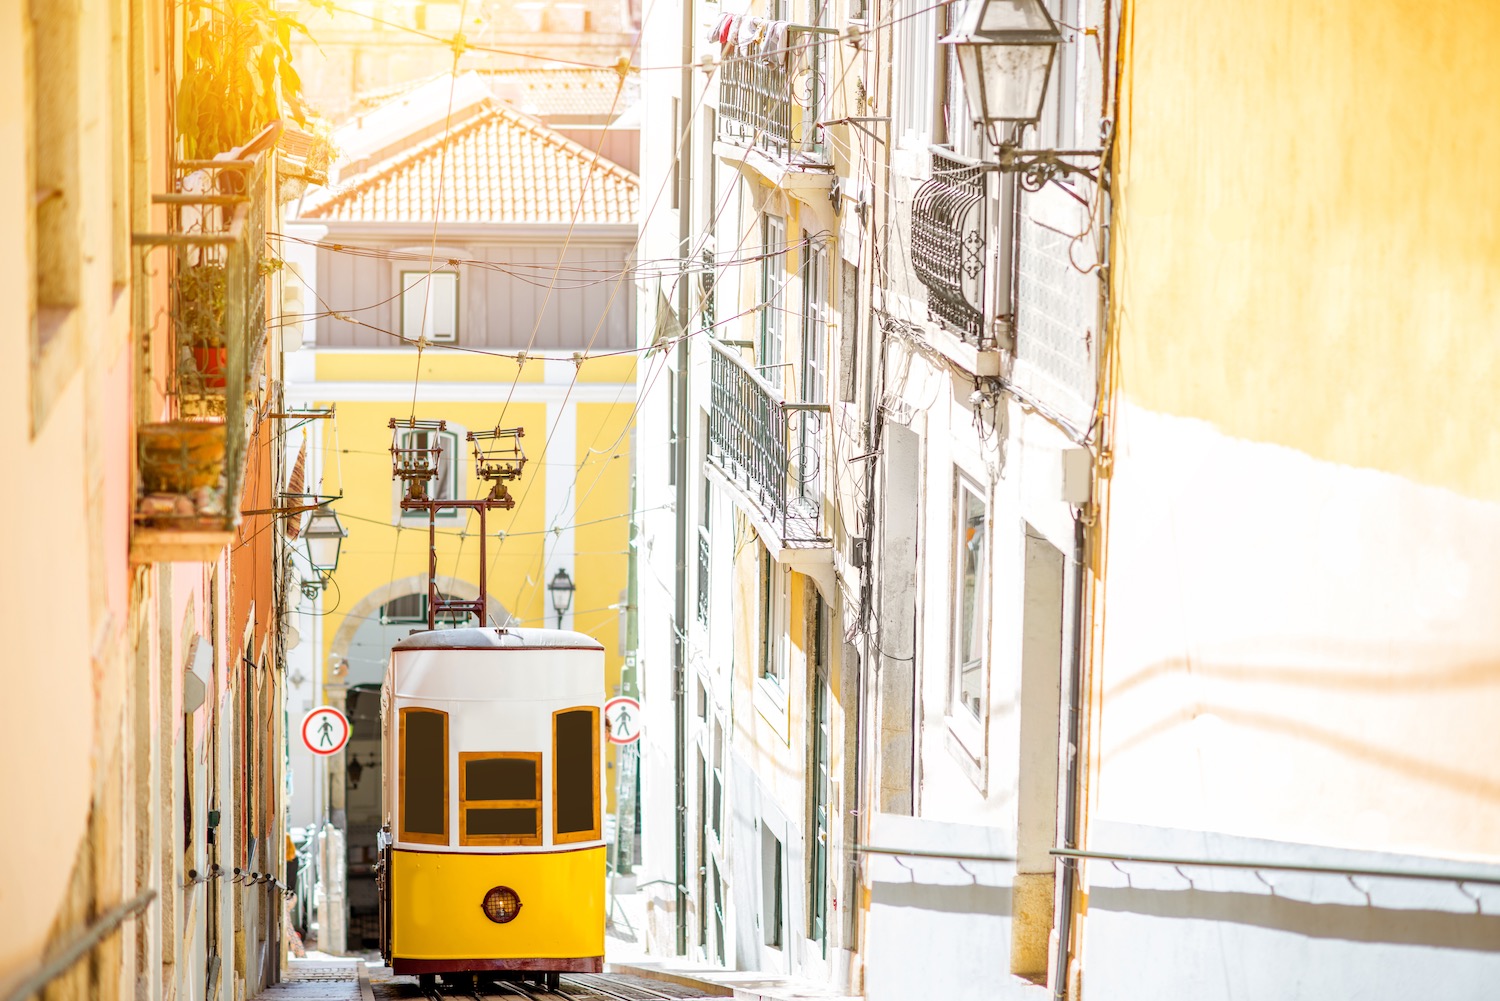 Funicular de Lisboa en calle estrecha